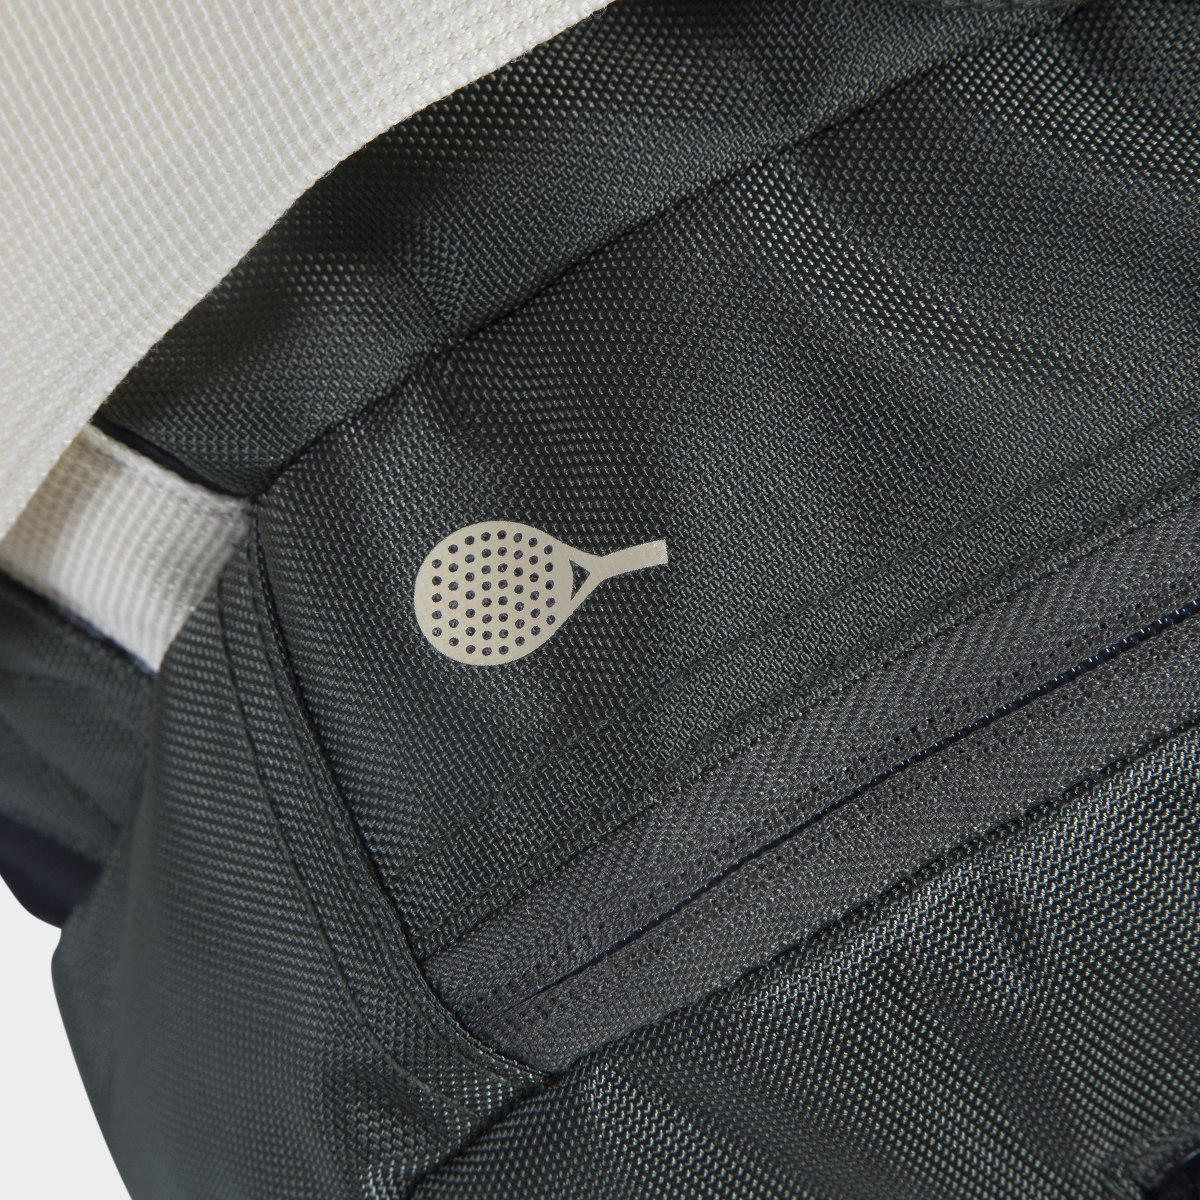 Adidas Tour Racket Bag. 6